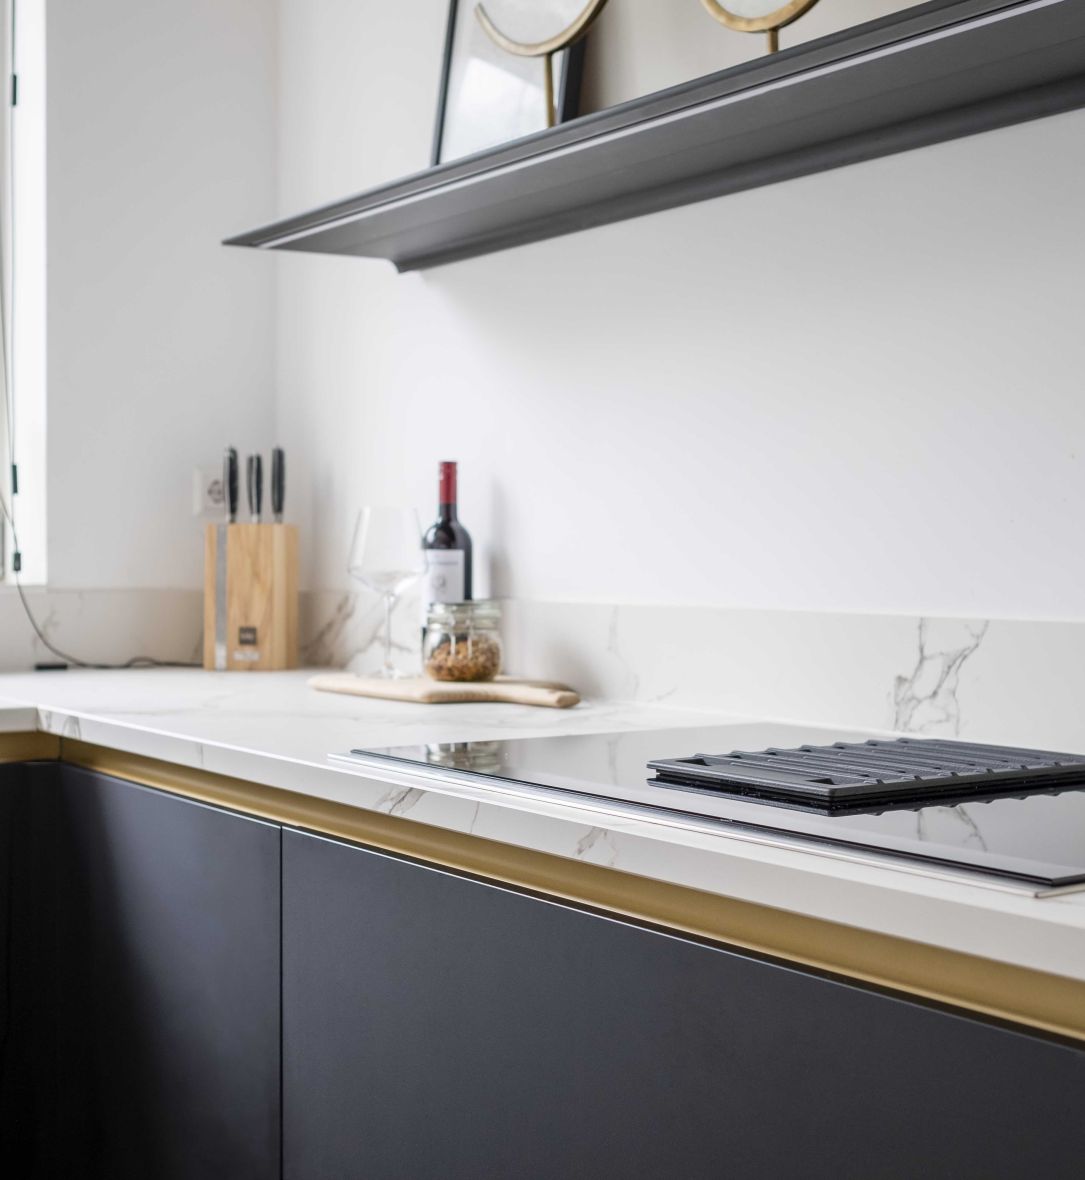 Moderne keuken in zwart, wit en goud